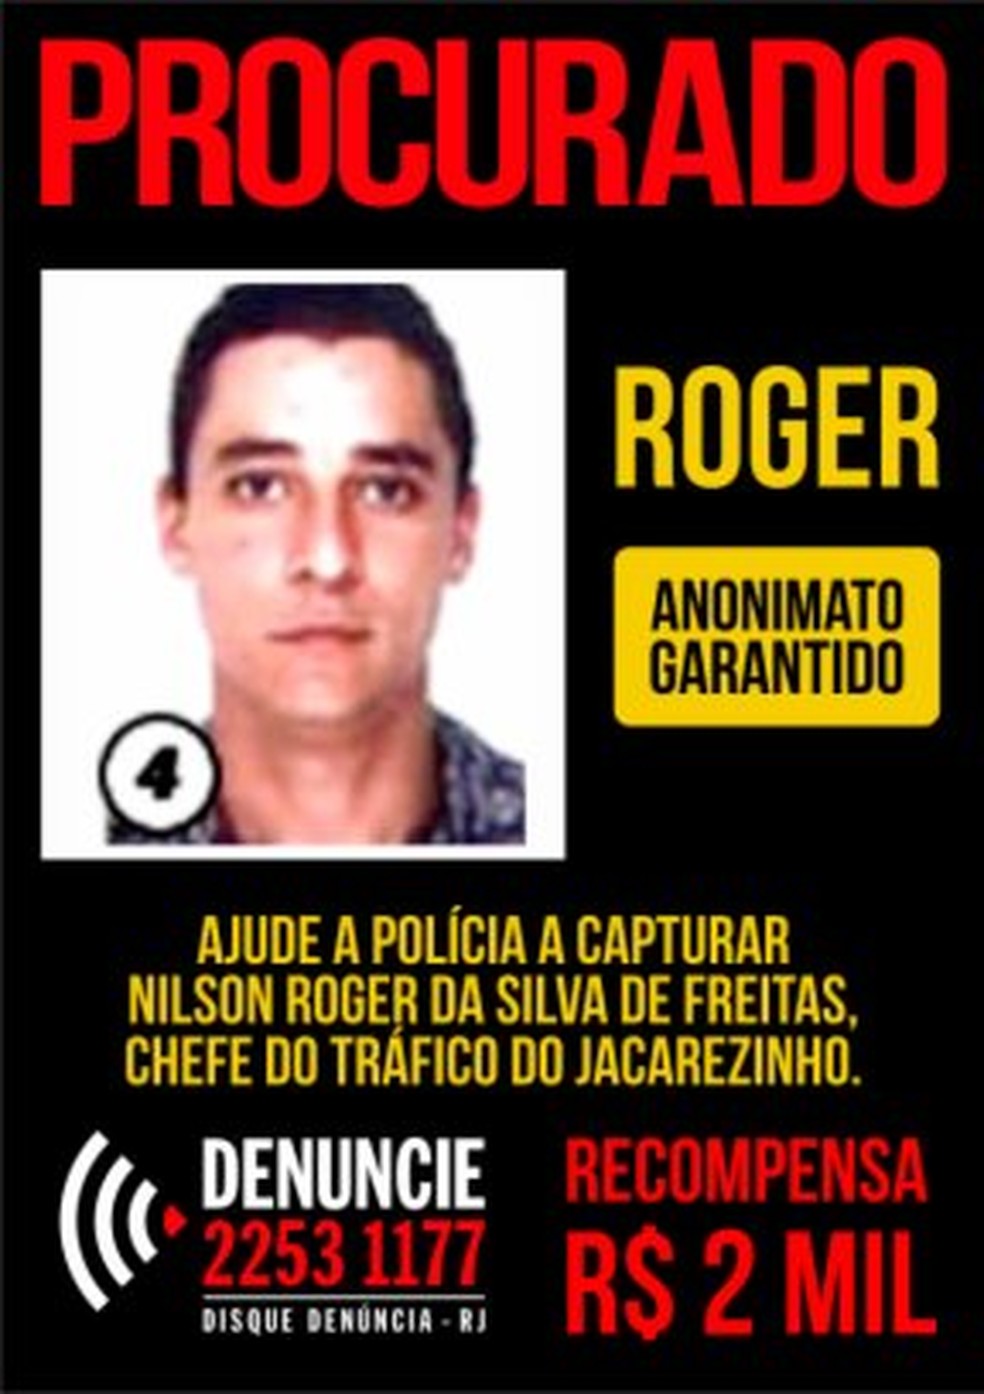 Disque-Denúncia oferece recompensa pelo traficante Roger do Jacarezinho (Foto: Reprodução)